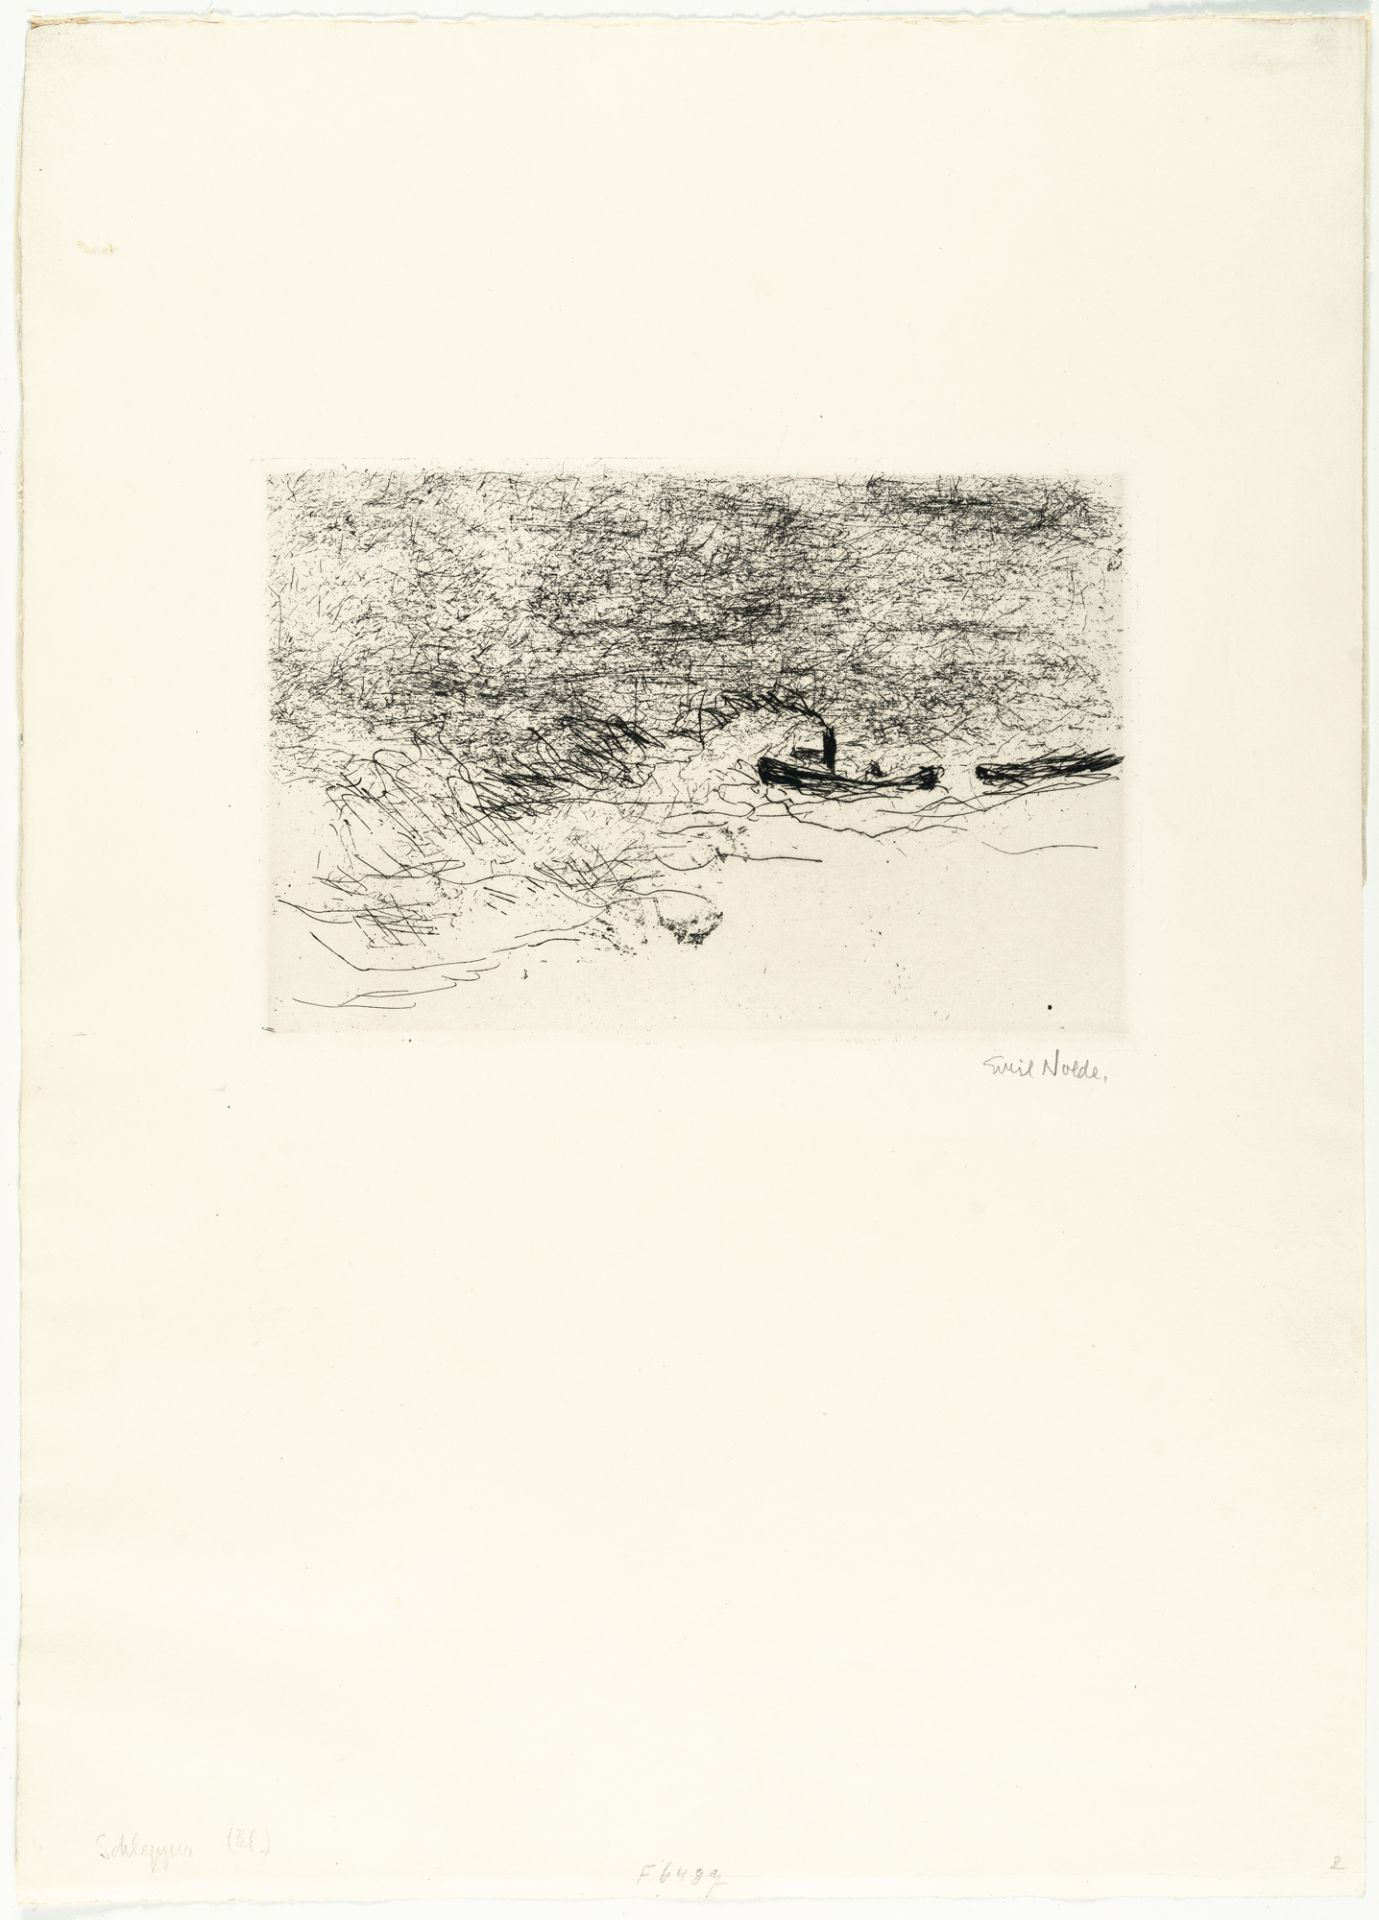 Emil Nolde (1867 Nolde - Seebüll 1956) – Schlepper - Bild 2 aus 3